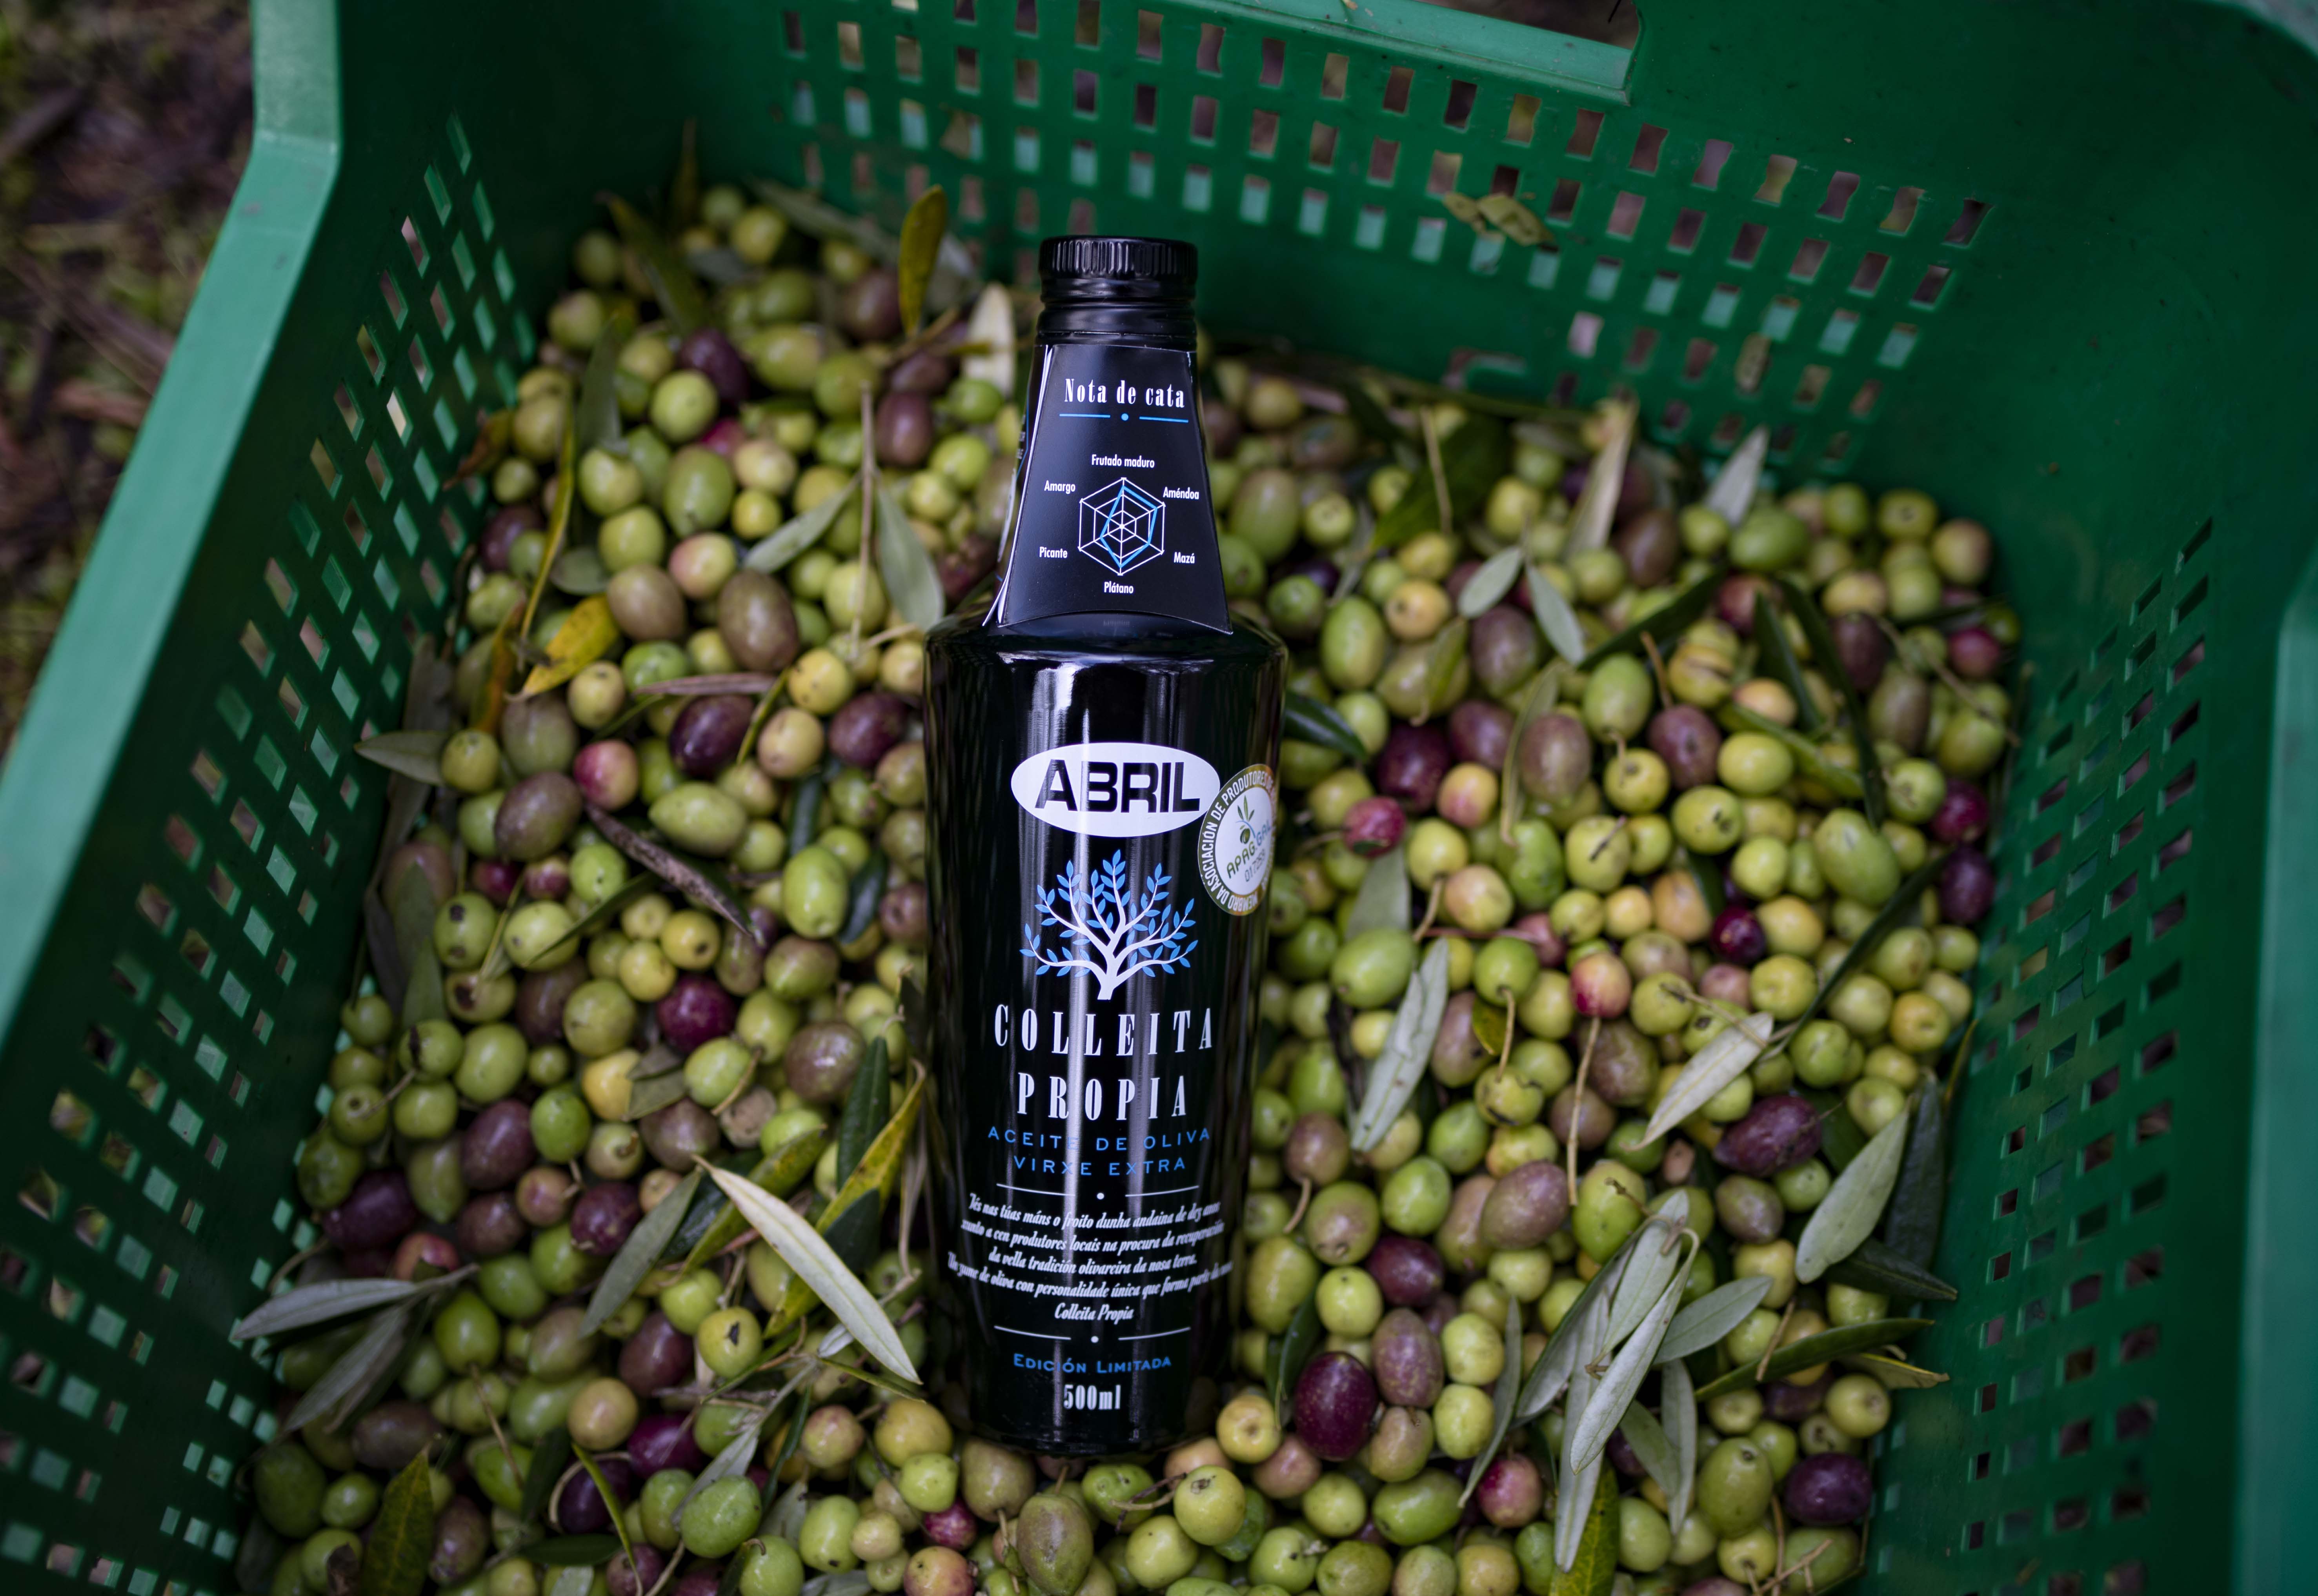 Moreiras (Toén). 10/11/2021. Recollida de oliva das oliveiras que ten Aceites Abril en Moreiras. 
Foto: Xesús Fariñas